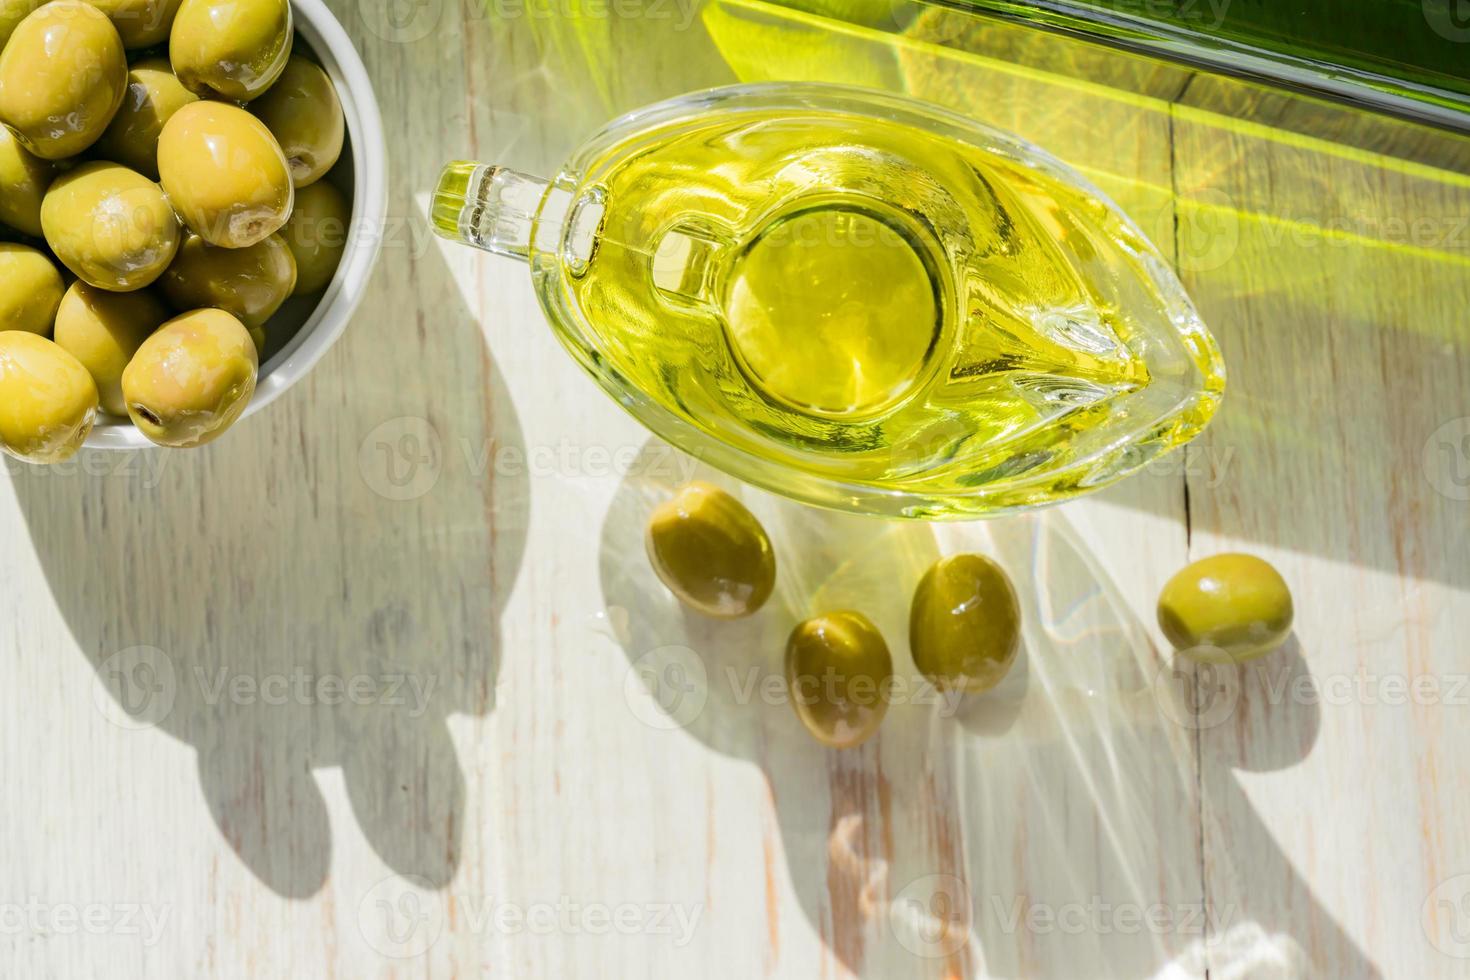 saucière en verre avec huile d'olive extra vierge, olives vertes fraîches et bouteille sur table en bois. photo